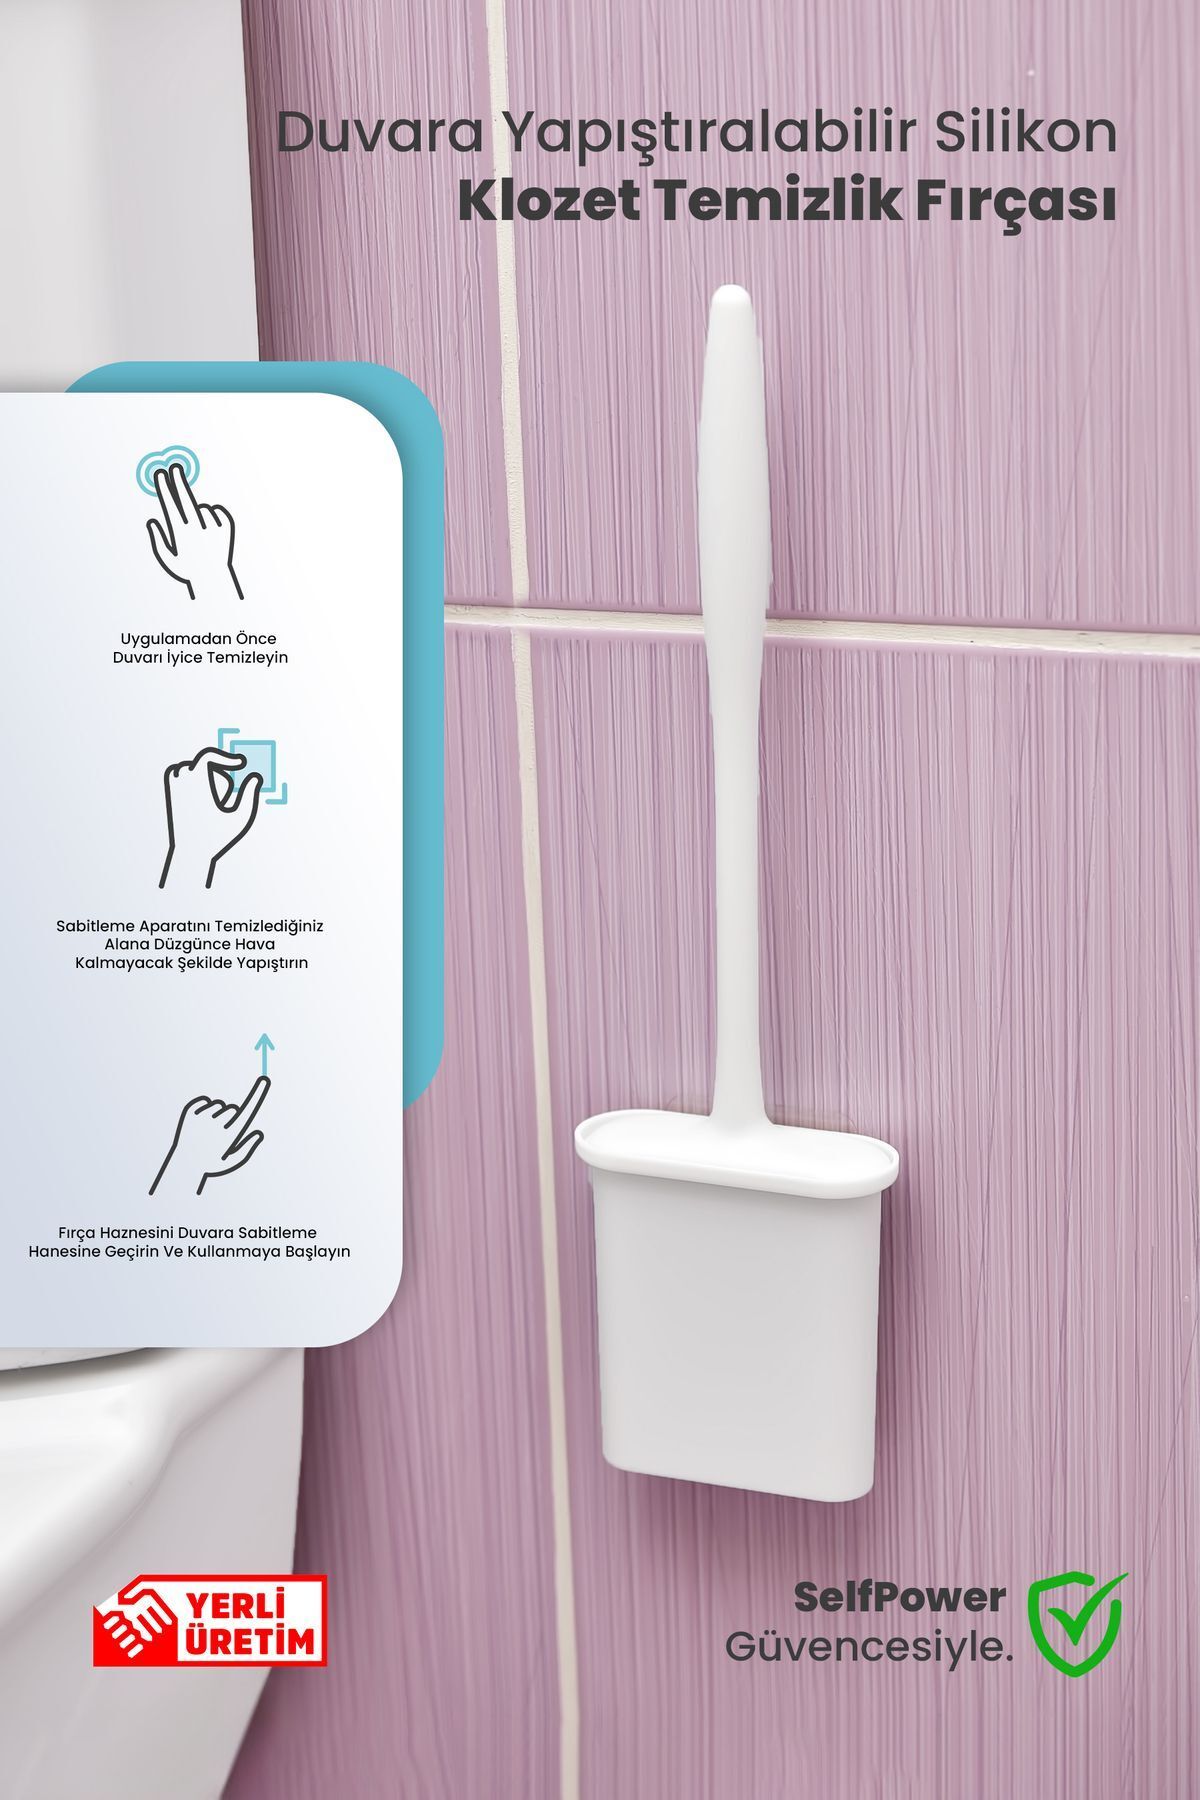 Self Power Beyaz Renk Silikon Duvara Yapışan Bükülebilir Pratik Silikon Wc Klozet ve Tuvalet Fırçası